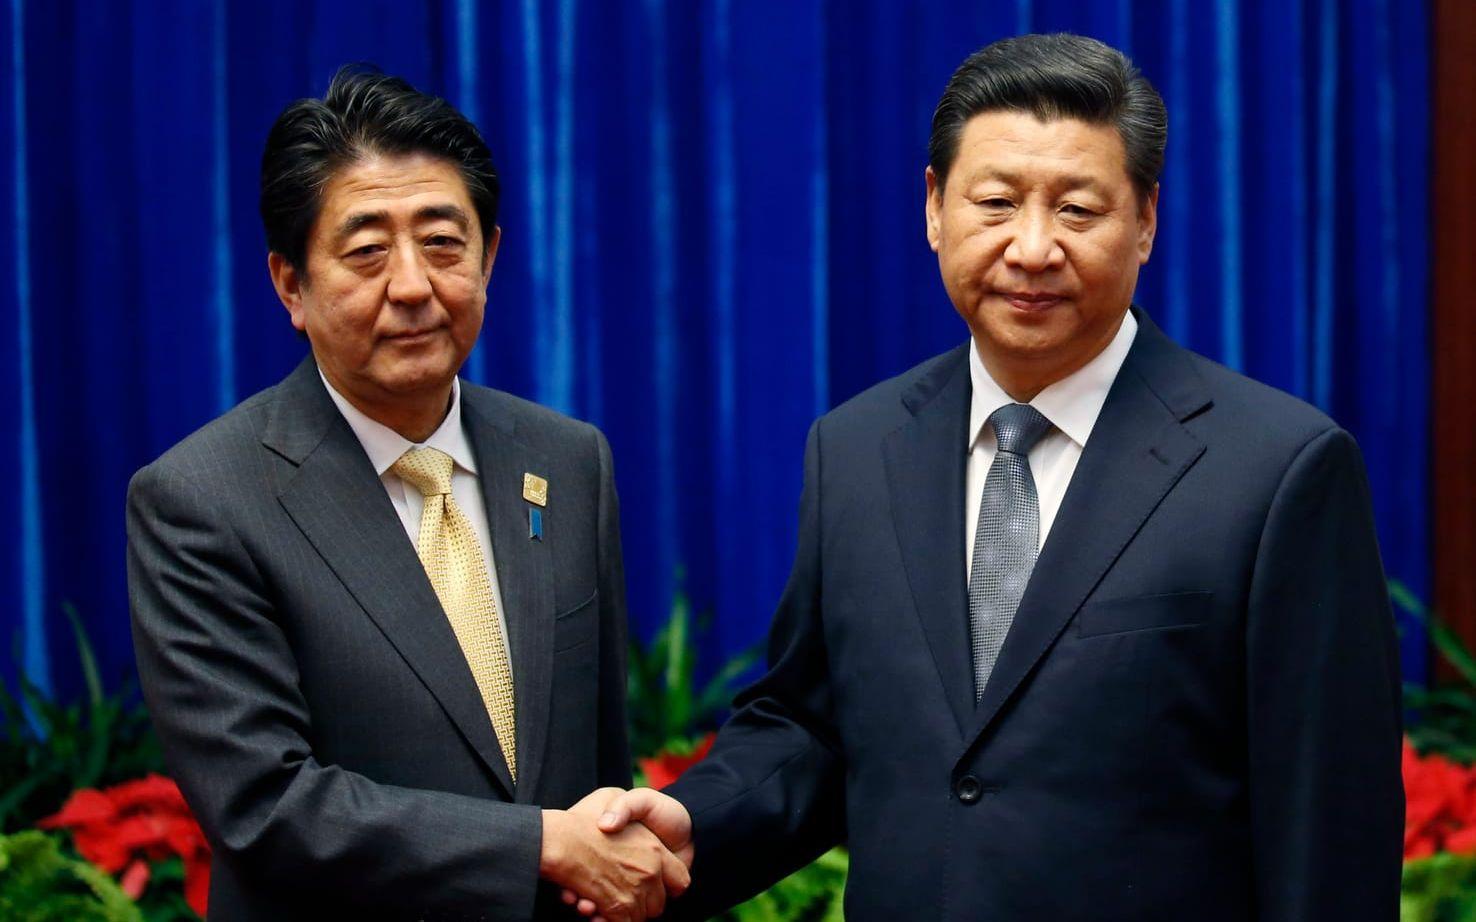 <strong>MOTVILLIGT HANDSLAG. </strong>Hälsningen mellan den japanske premiärministern Abe Shinzo och Kinas president Xi Jinping på APEC-mötet i november 2014 osar inte direkt av entusiasm. Det var ledarnas första möte sedan de kom till makten och det första efter en längre tids spänning mellan länderna.